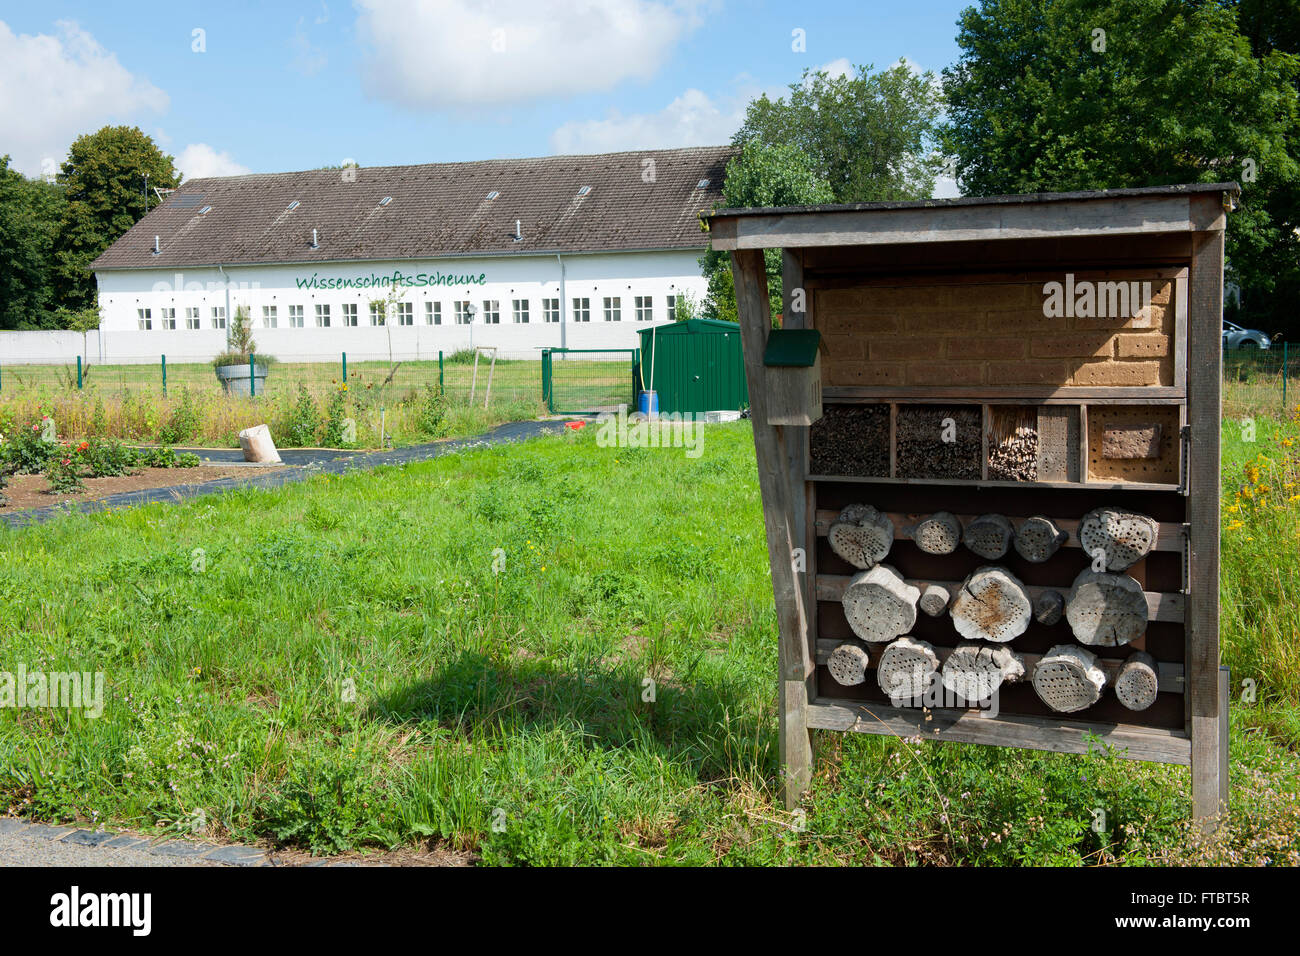 Deutschland, Köln, Max-Planck-Institut für Pflanzenzüchtungsforschung, Insektenhotel, im Hintergrund die Wissenschaftsscheune Wi Foto Stock